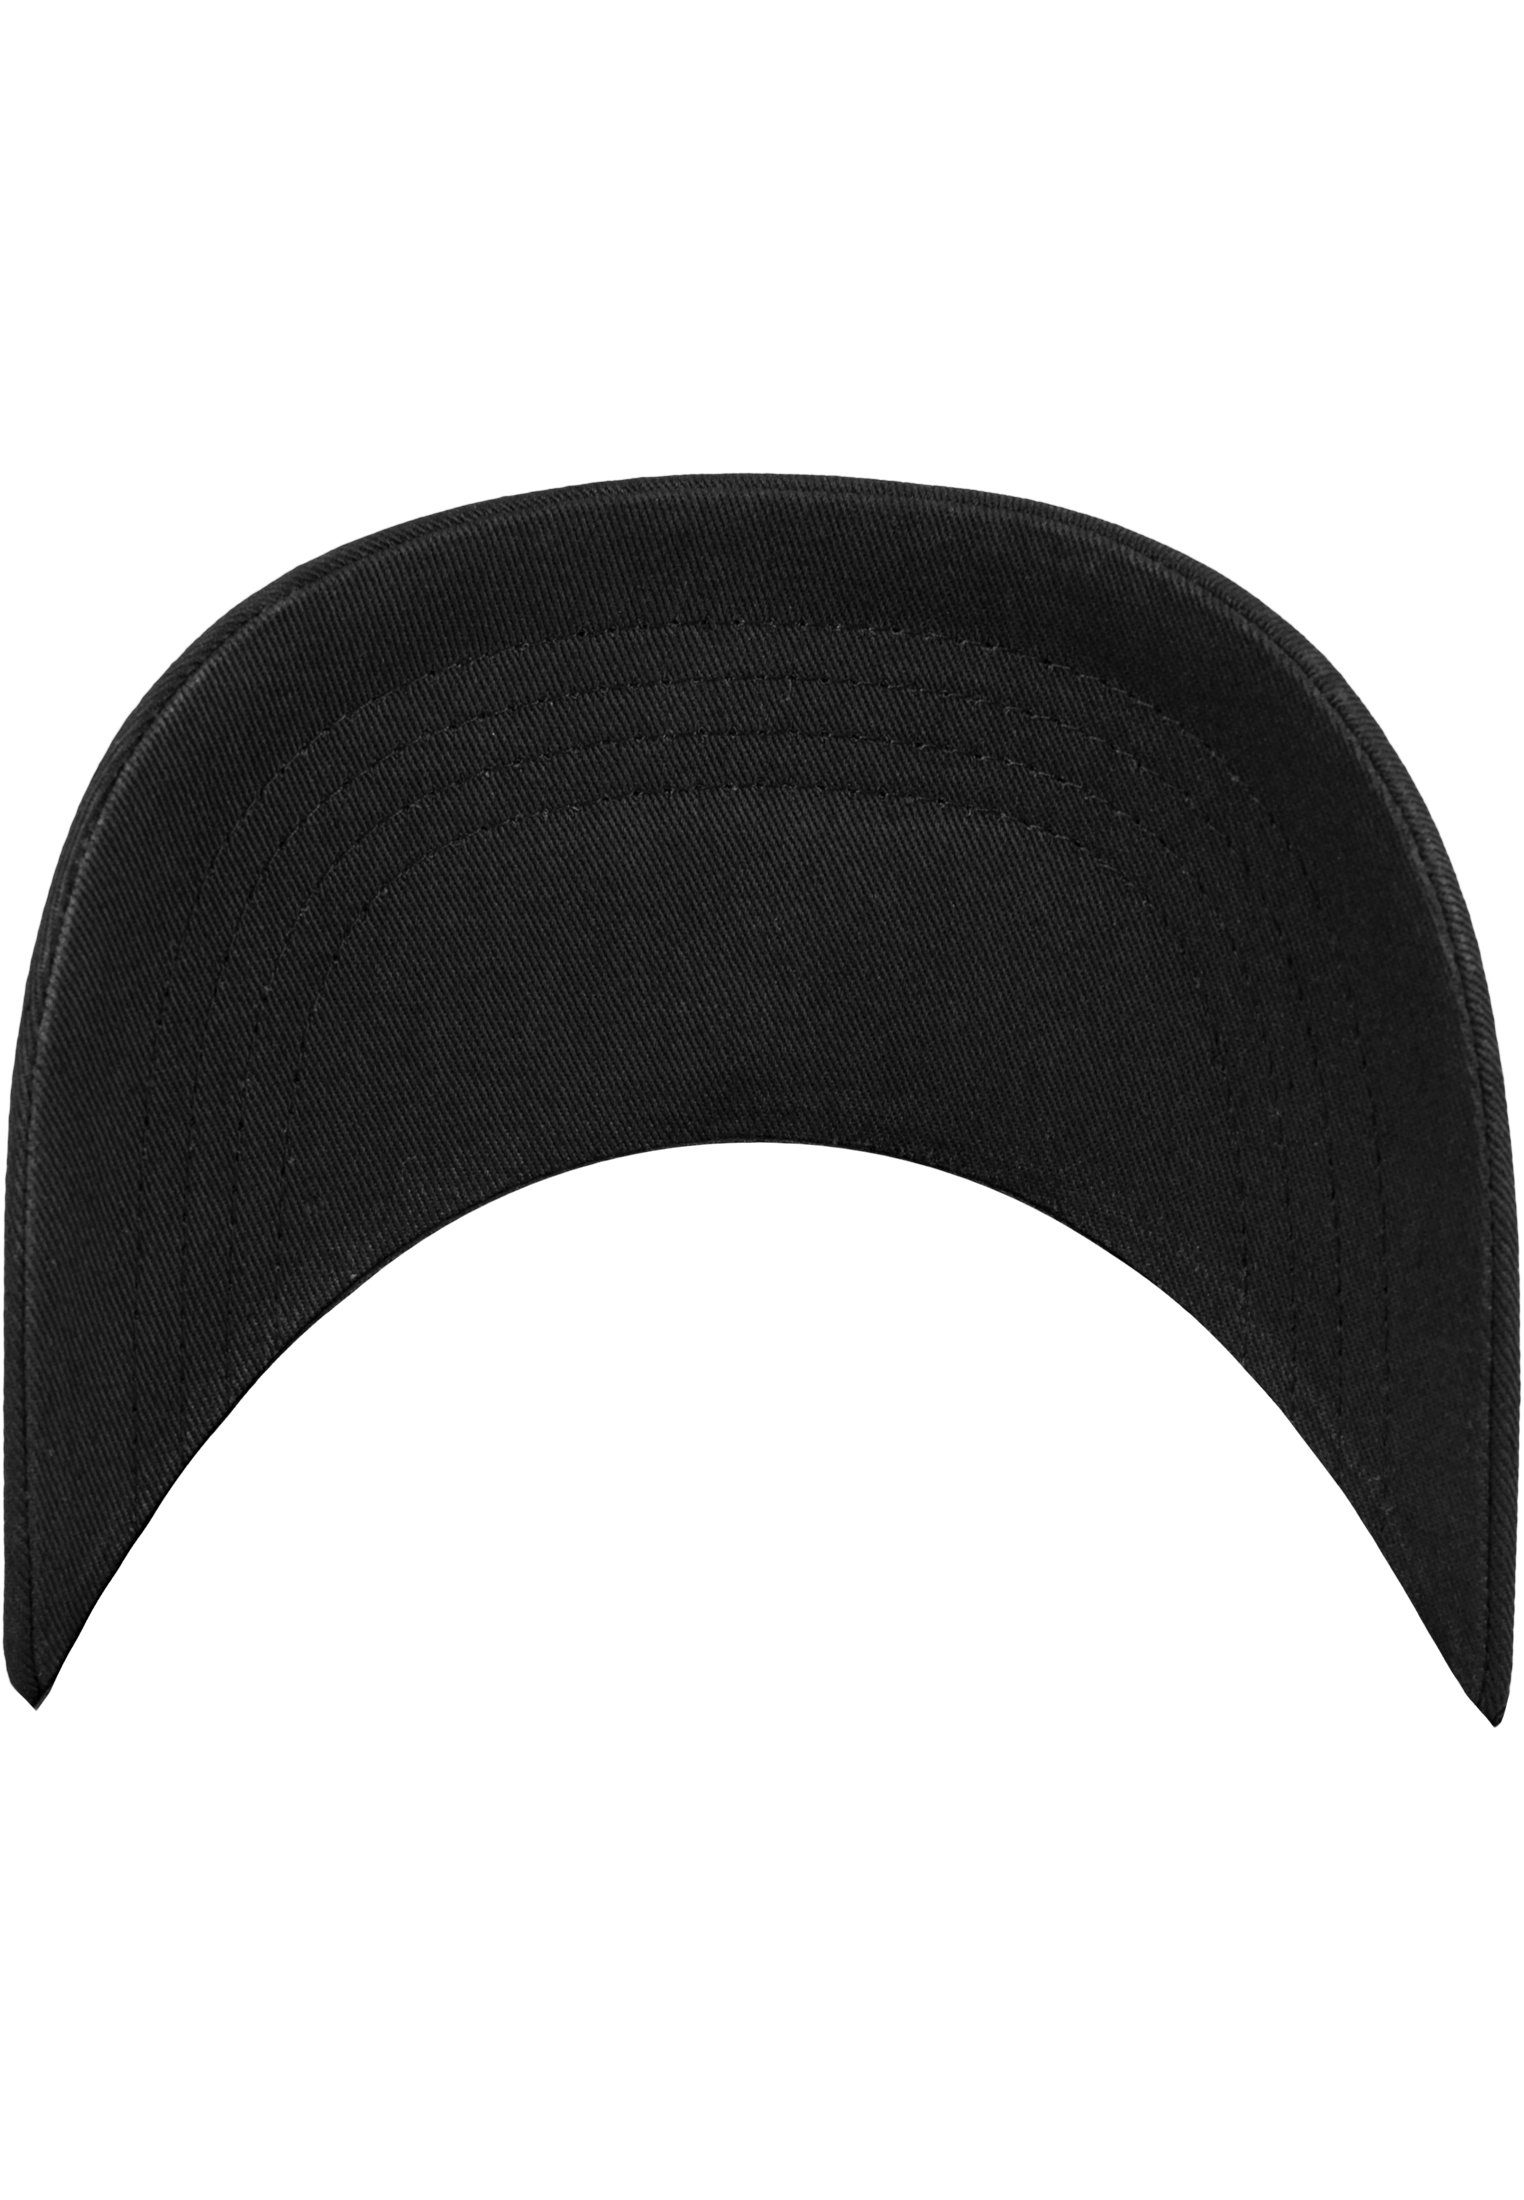 Flexfit Flex Twill 6245CM Low Profile Cotton Black Cap Flexfit